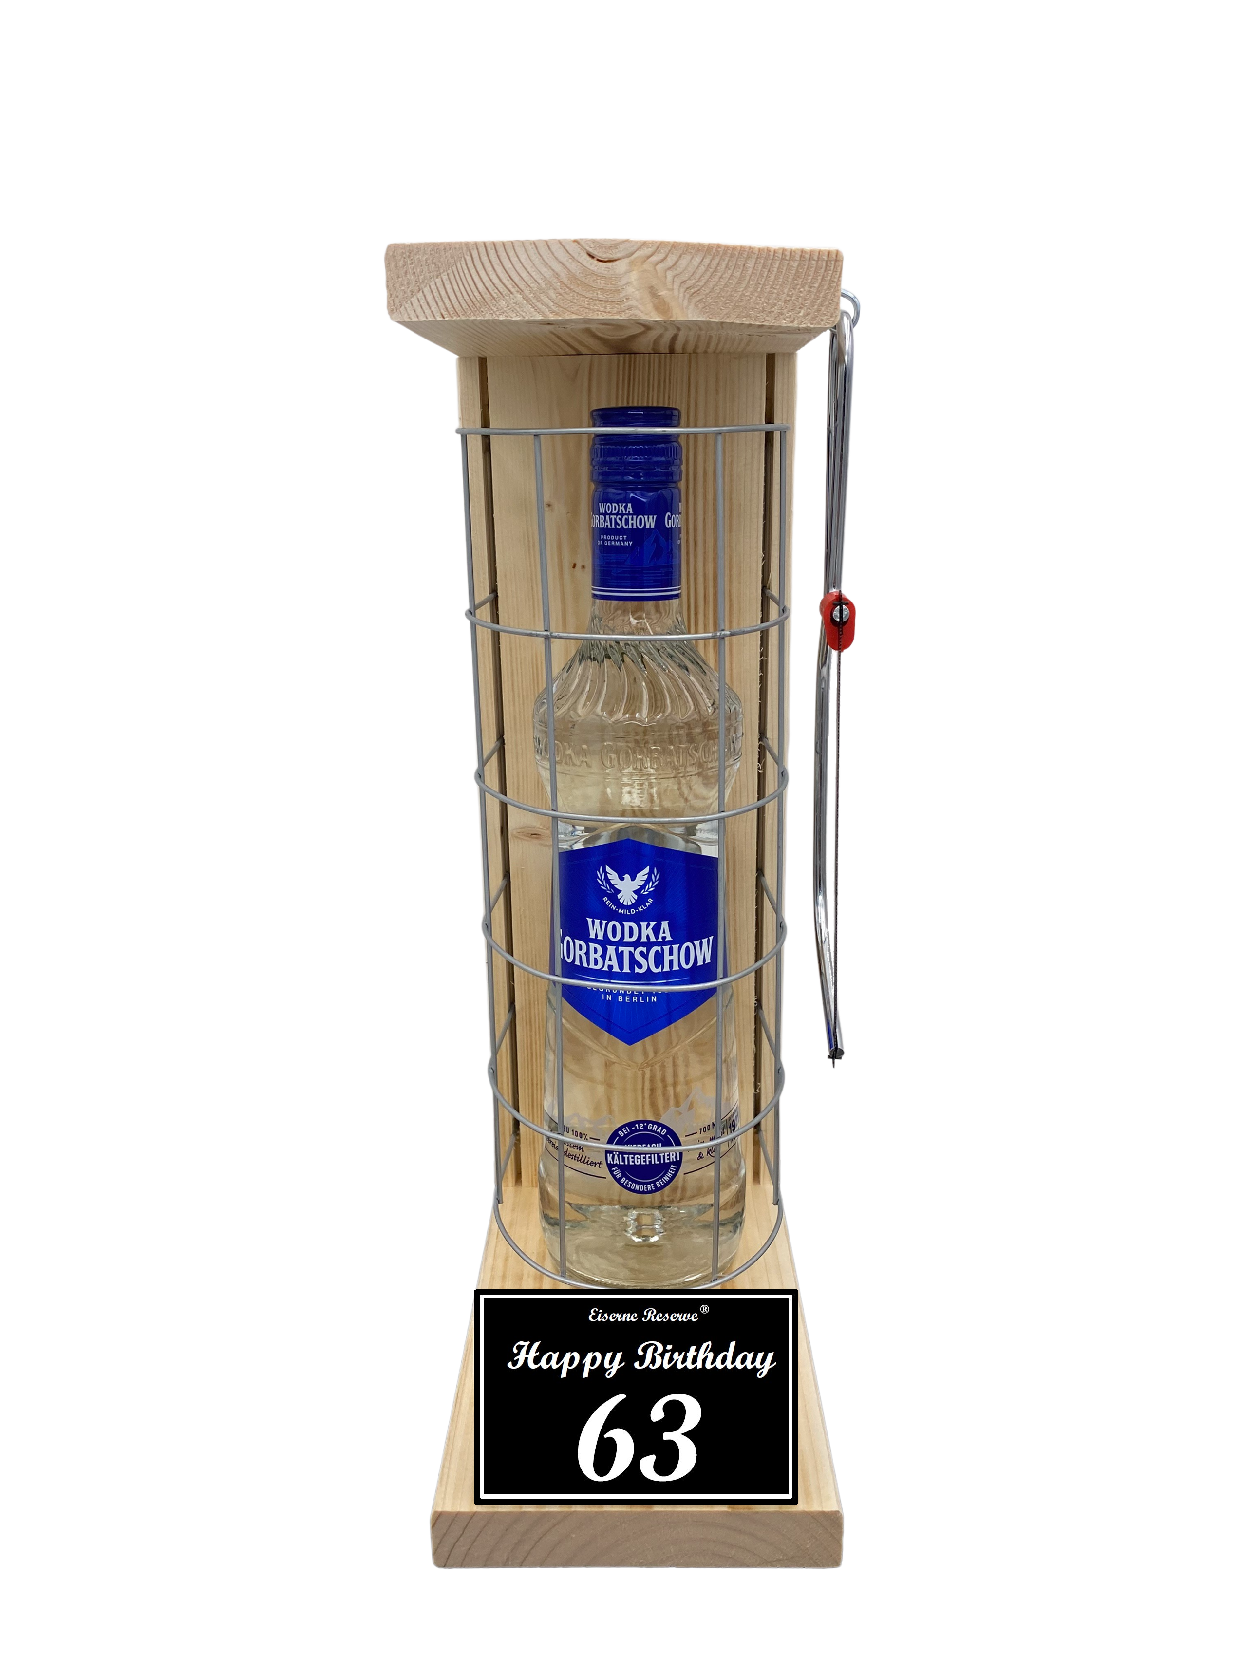 Wodka Geschenk zum 63 Geburtstag - Eiserne Reserve Gitterkäfig